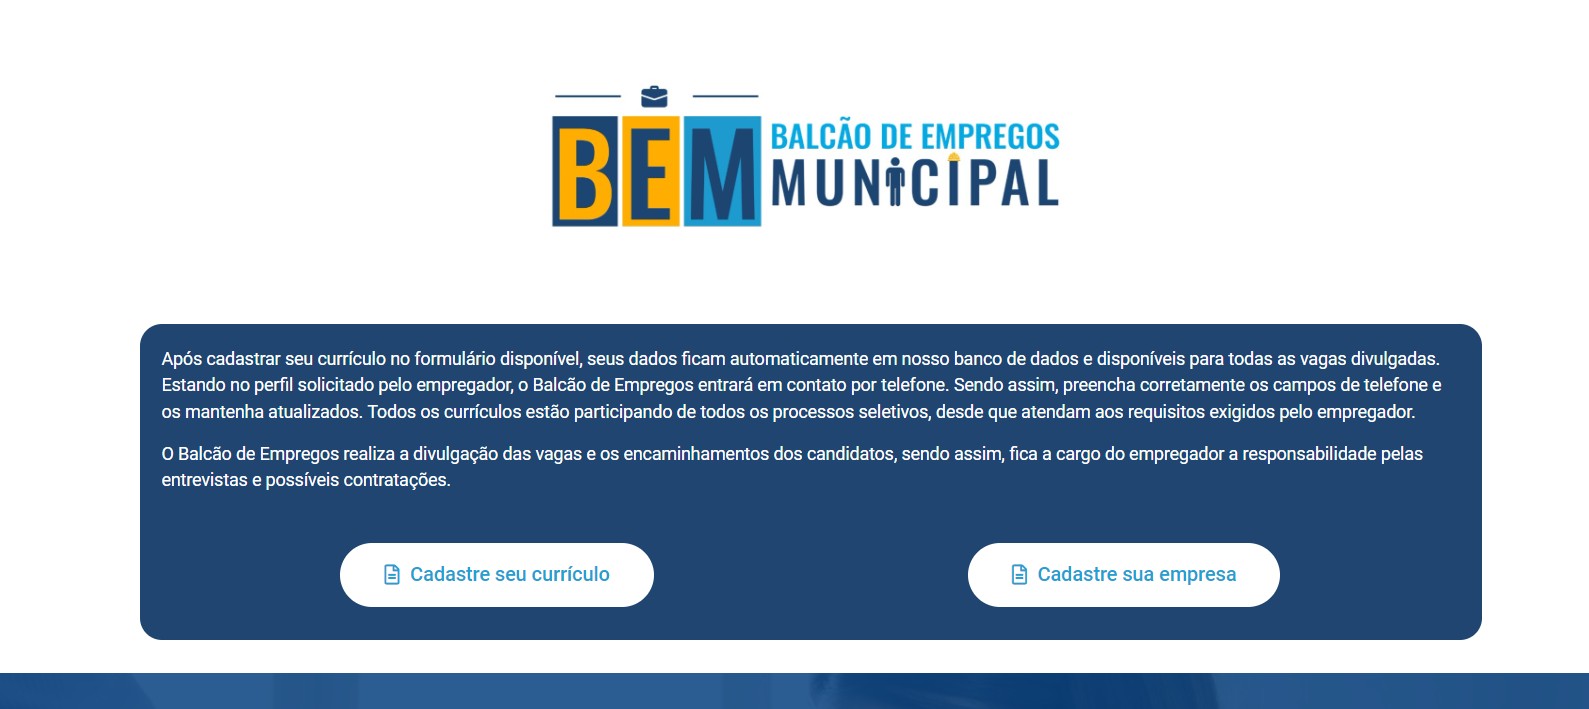 Prefeitura de Cabo Frio lança Balcão de Empregos Municipal (BEM); saiba como funciona